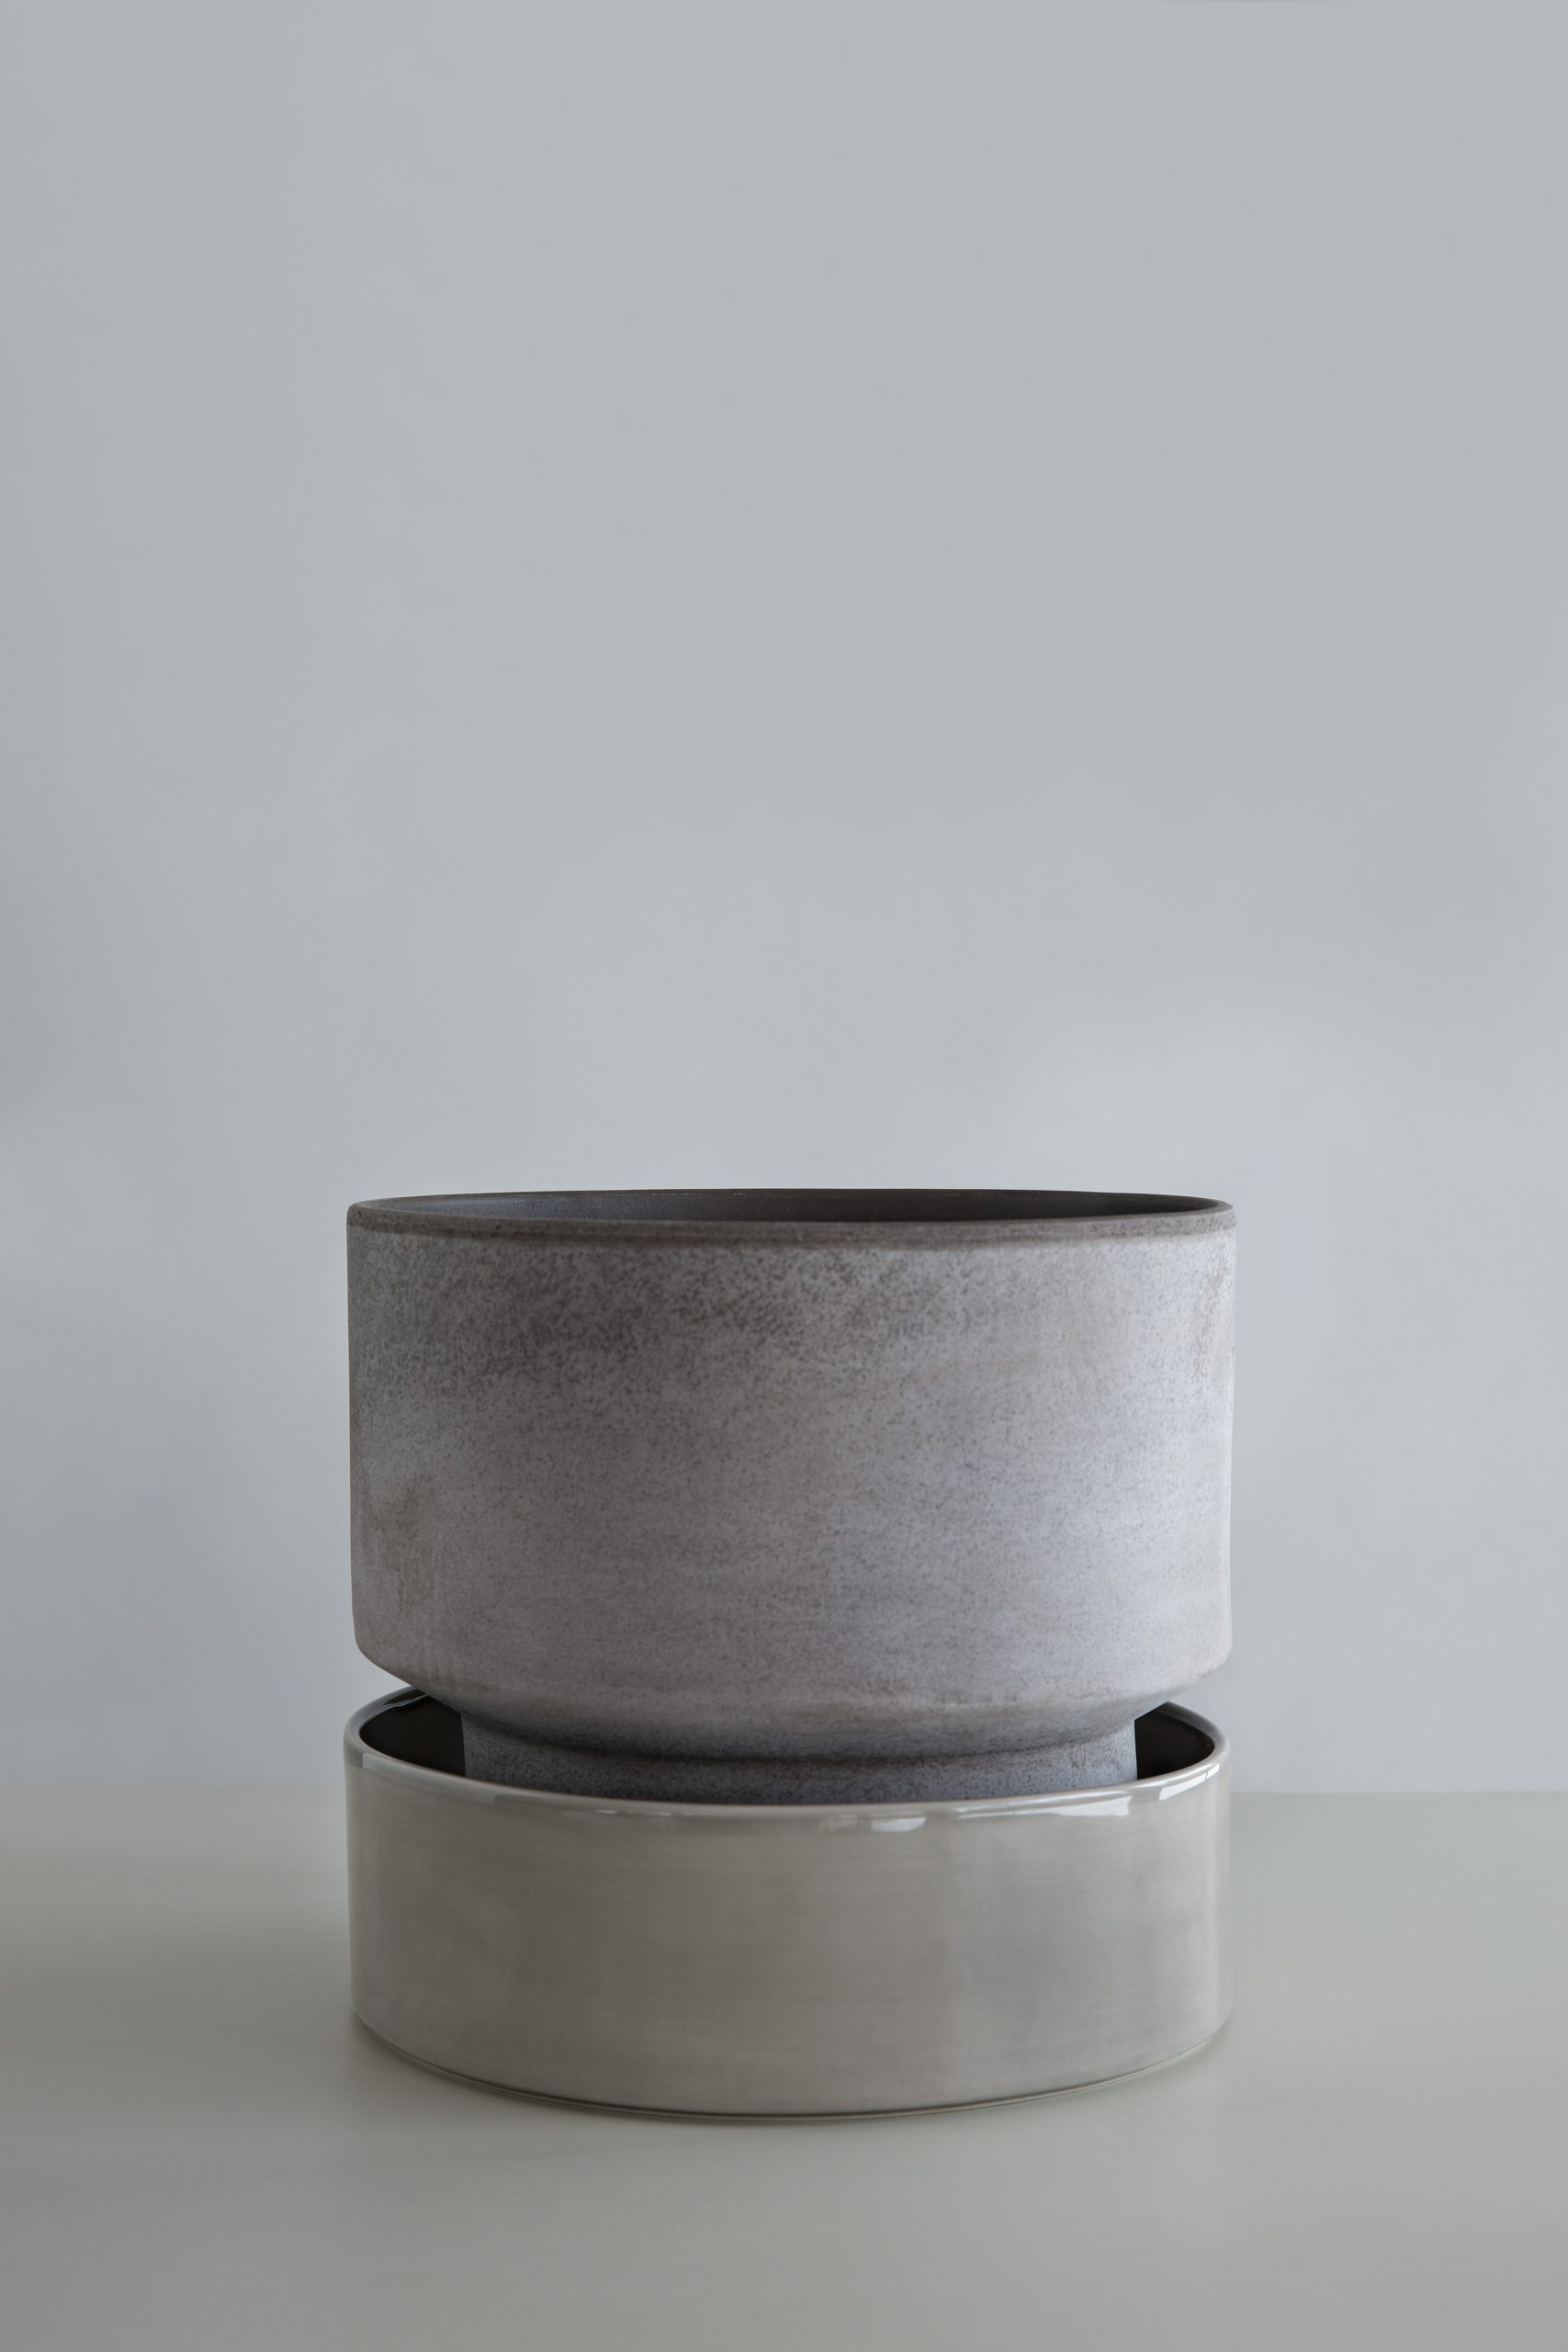 Raw grey pot with glazed pearl grey saucer.